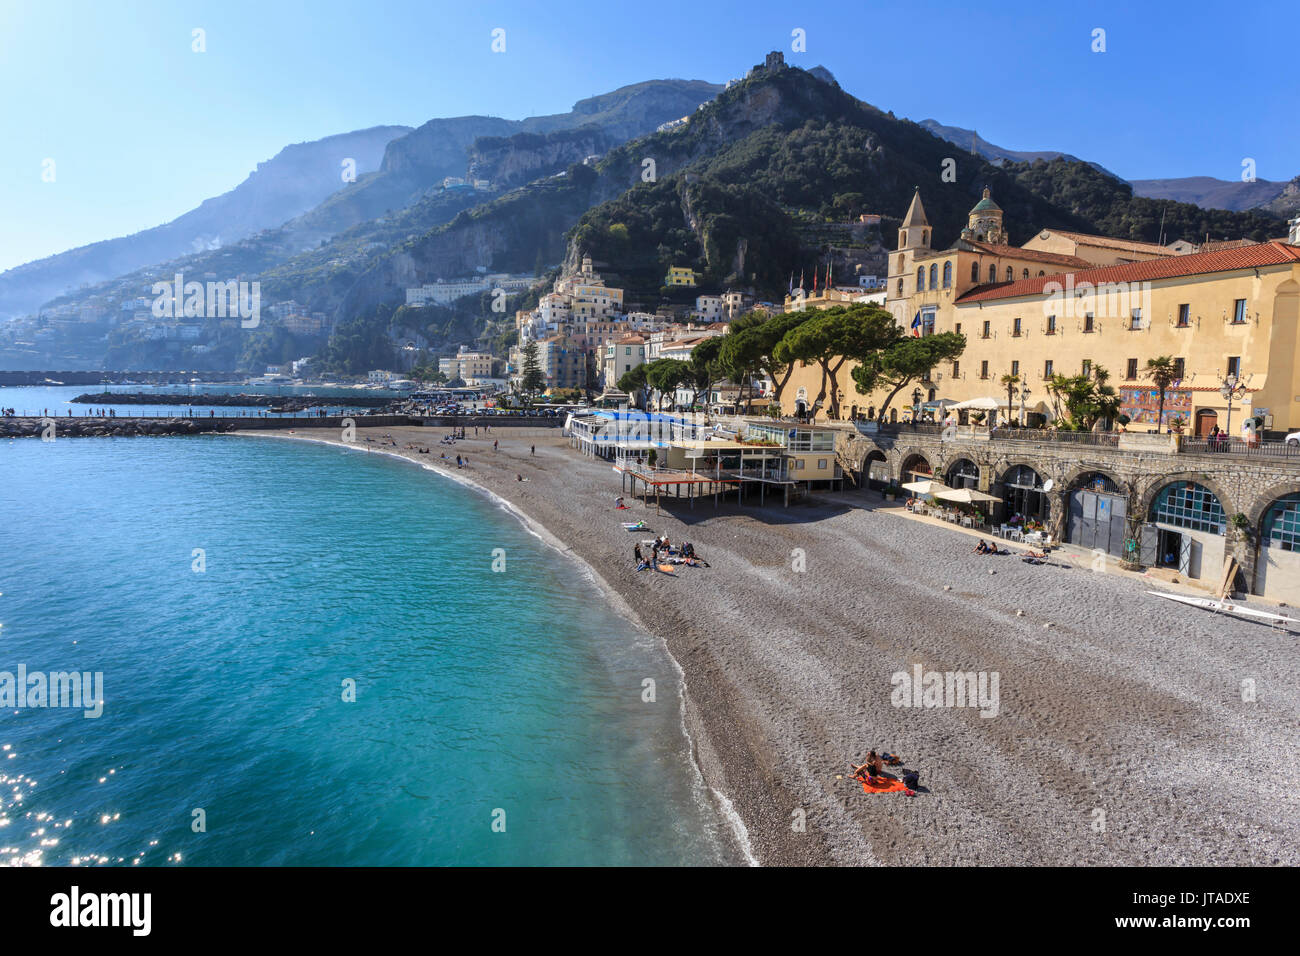 La gente sulla spiaggia di sole primaverile, Amalfi Costiera Amalfitana (Costiera Amalfitana), il Sito Patrimonio Mondiale dell'UNESCO, Campania, Italia, Europa Foto Stock